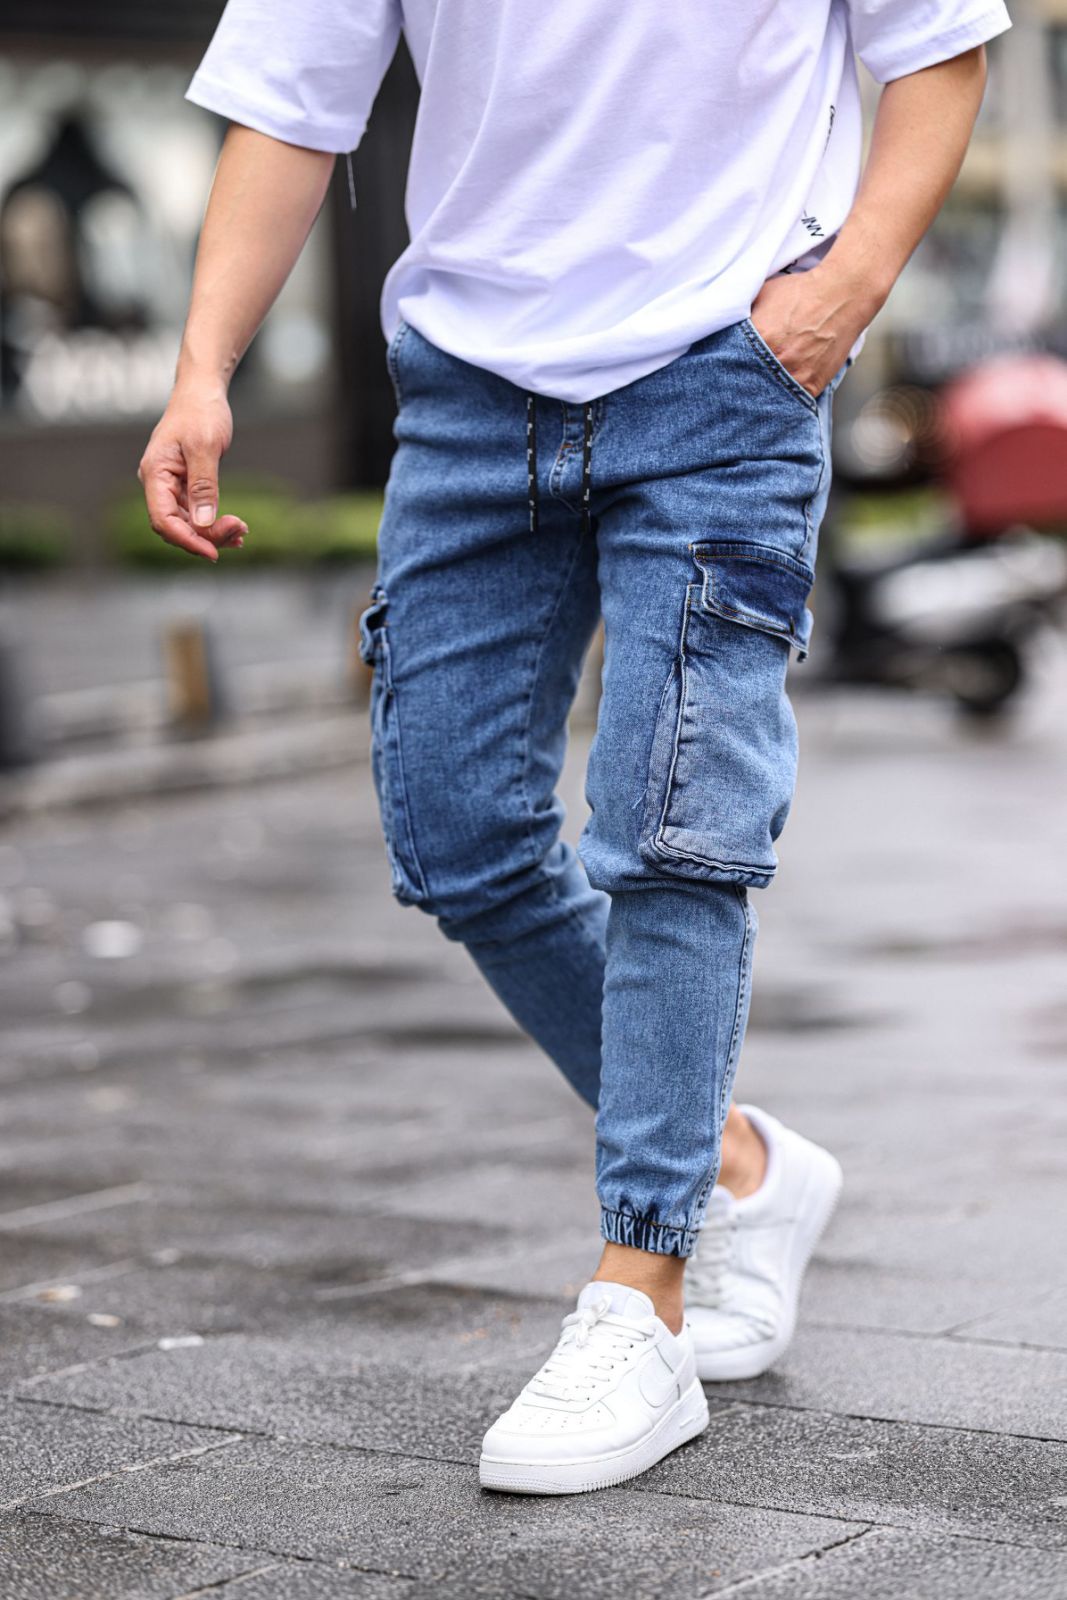 Spodnie męskie   jeans  Roz  30-38.  1 kolor . Paczka 8szt